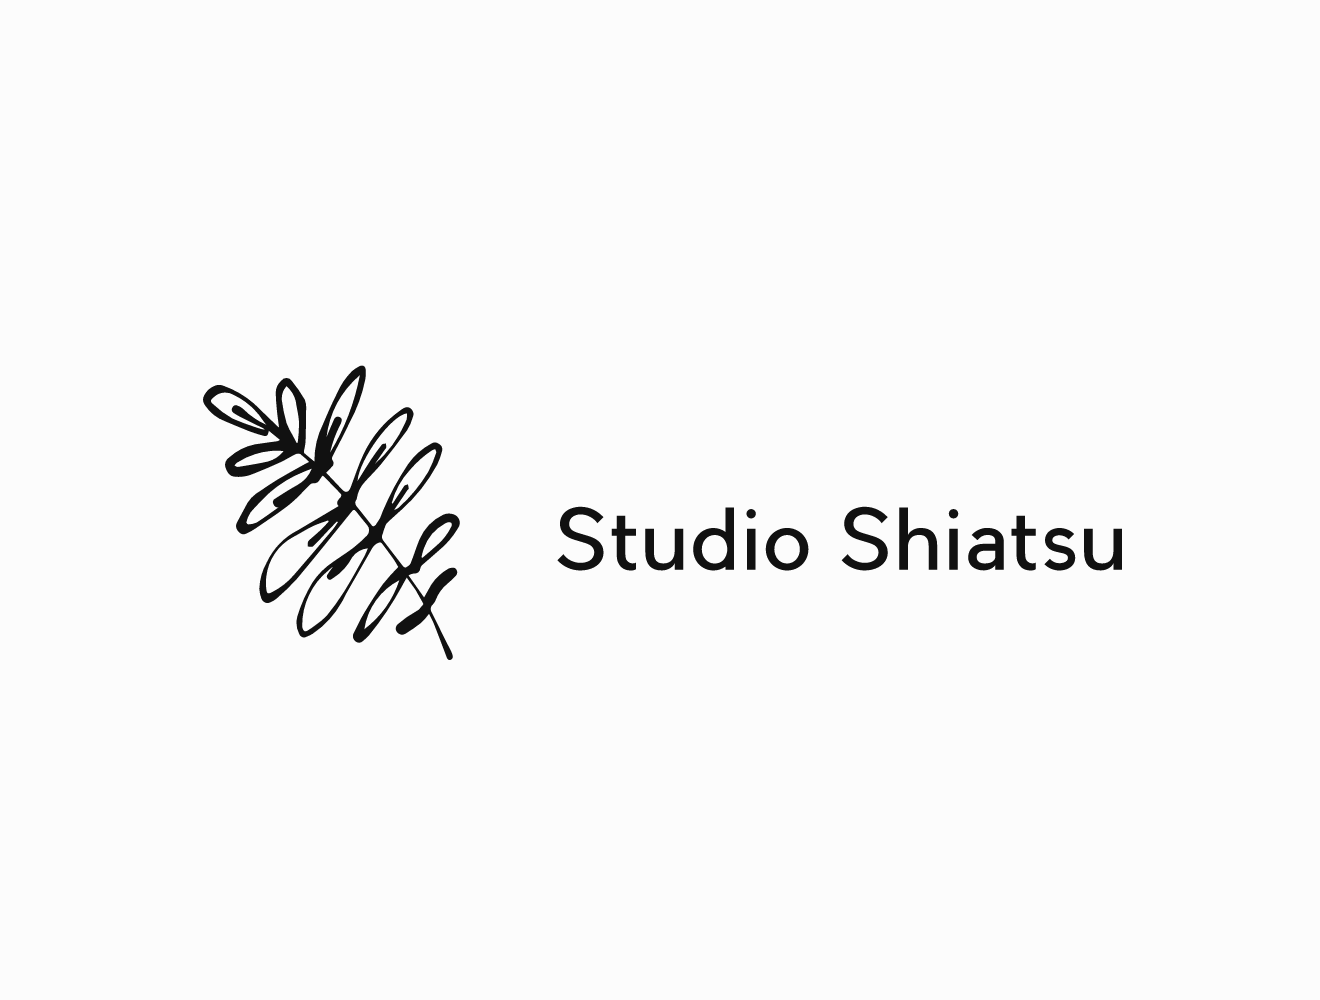 Studio Shiatsu